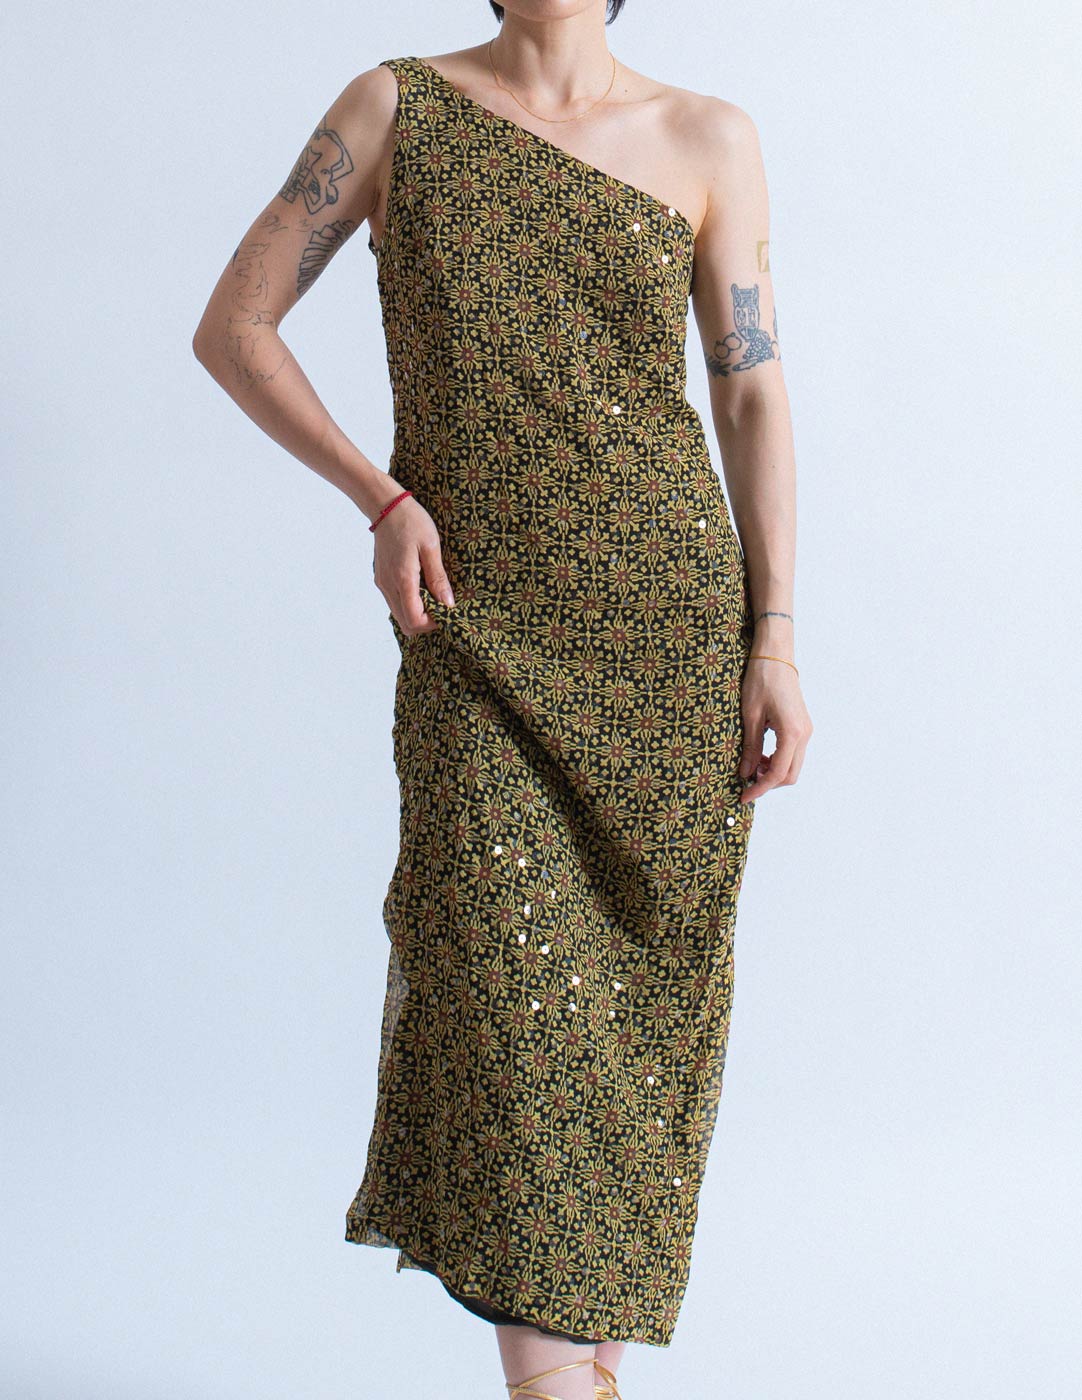 Versus vintage patterned sequin silk dress front detail